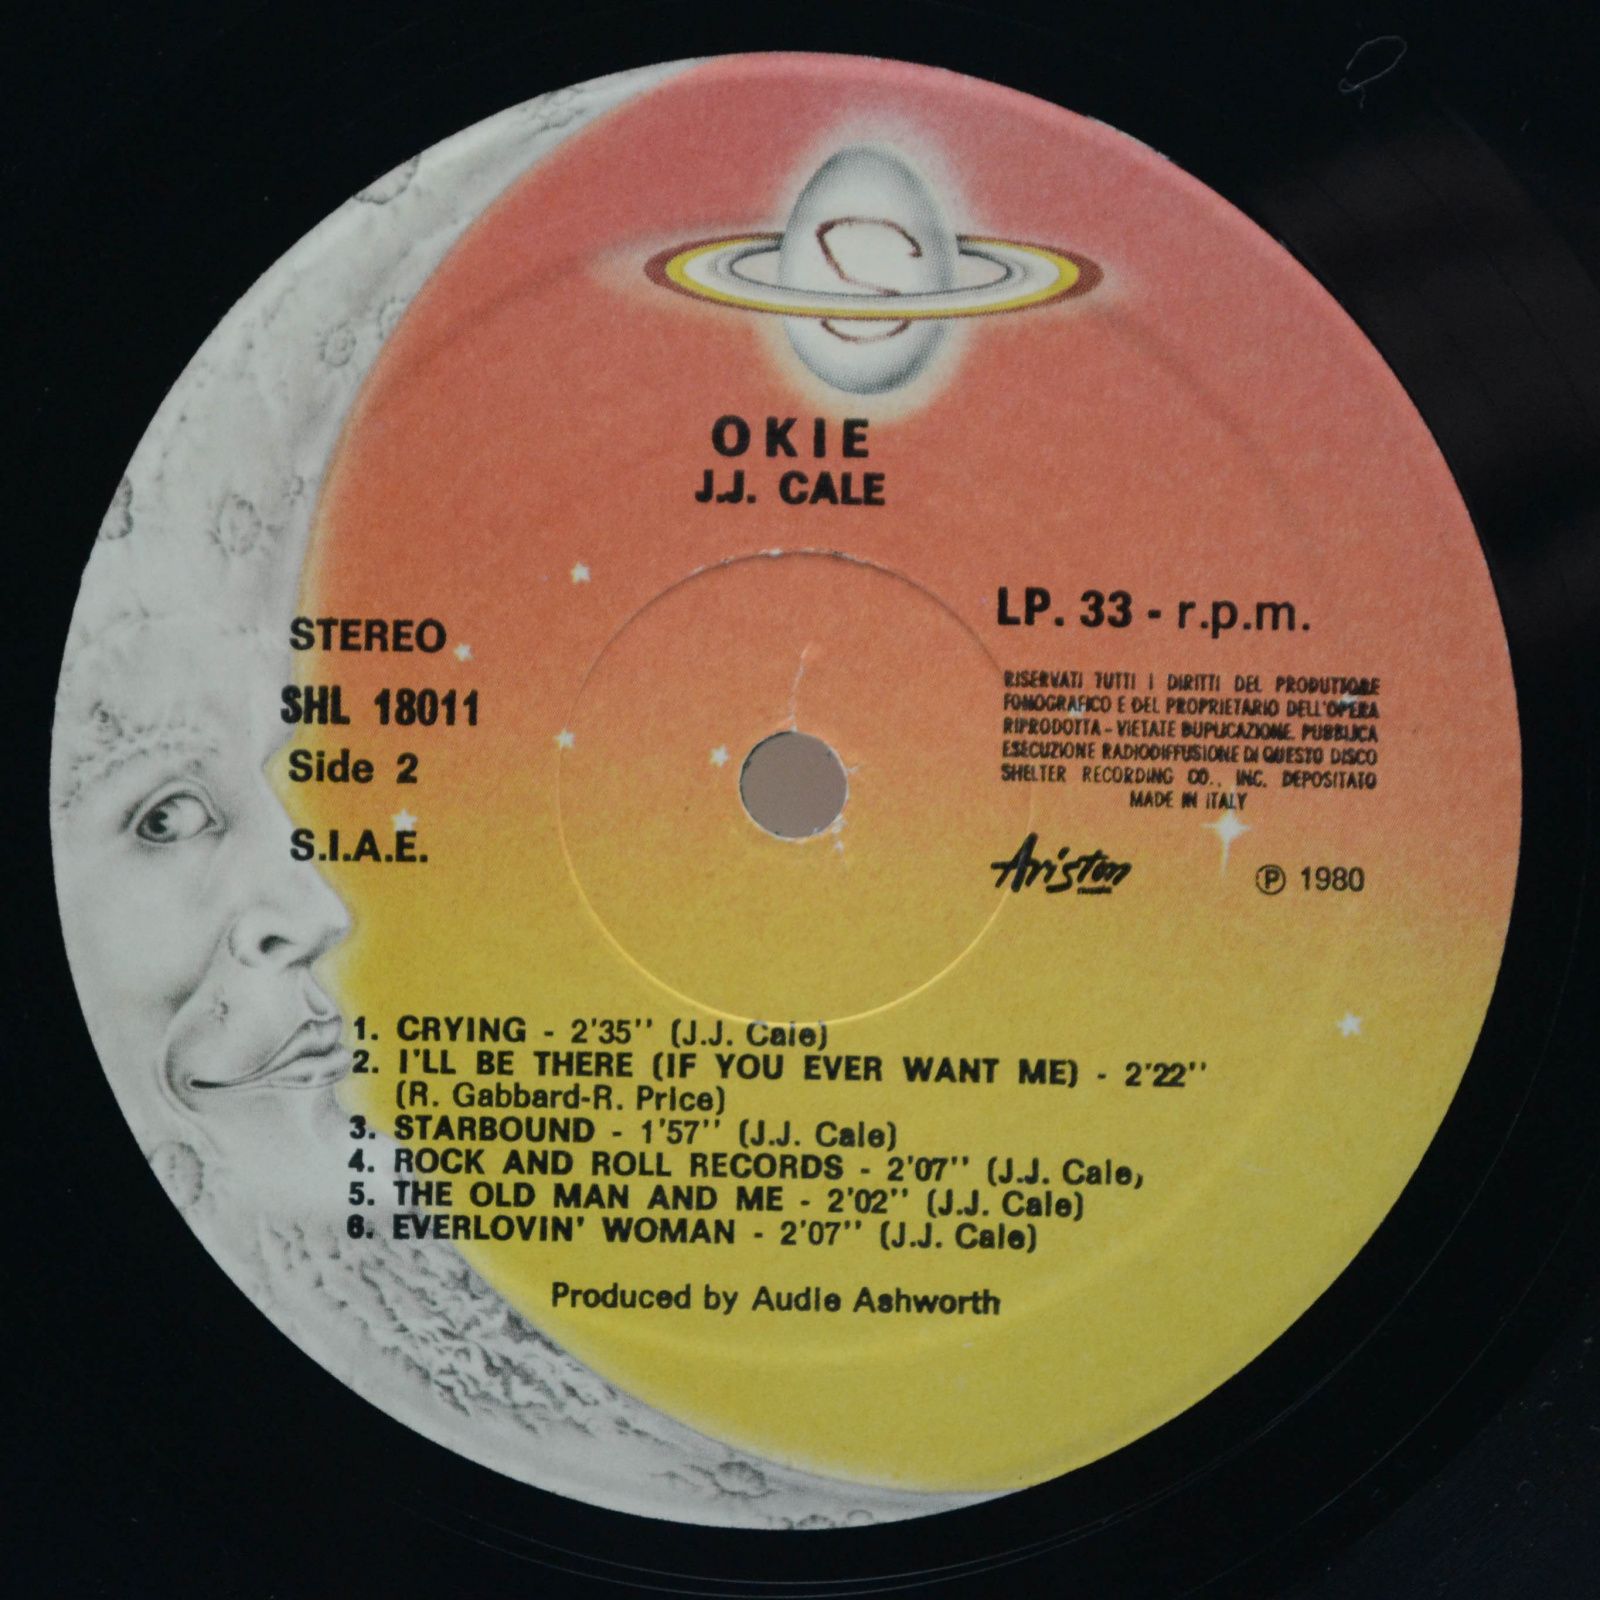 J.J. Cale — Best Of (Box-set), 1980